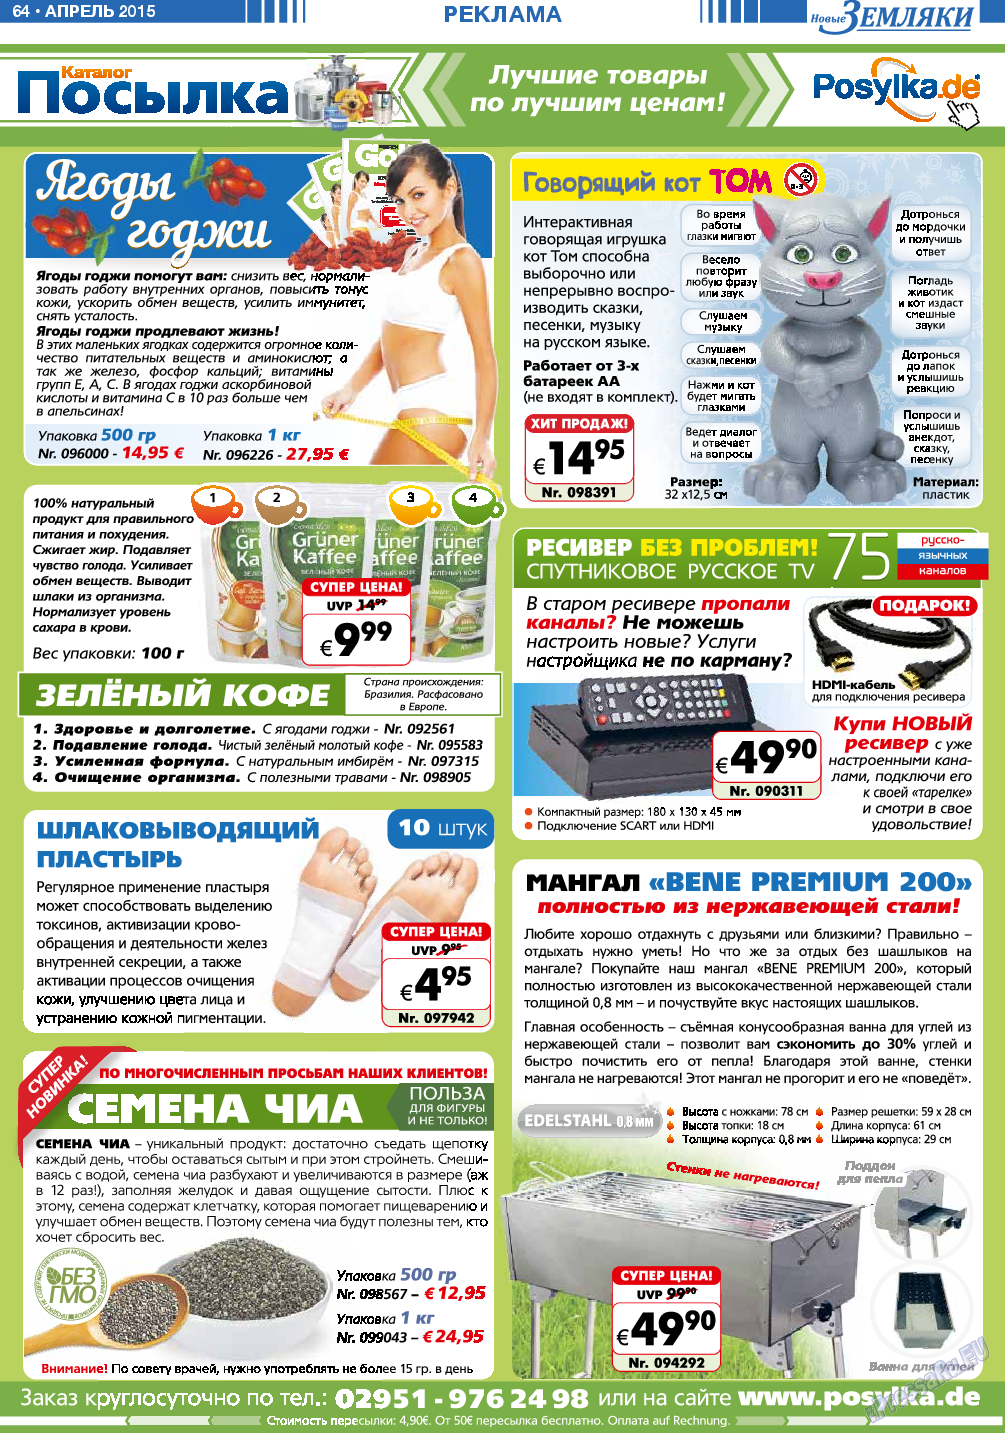 Новые Земляки, газета. 2015 №4 стр.64